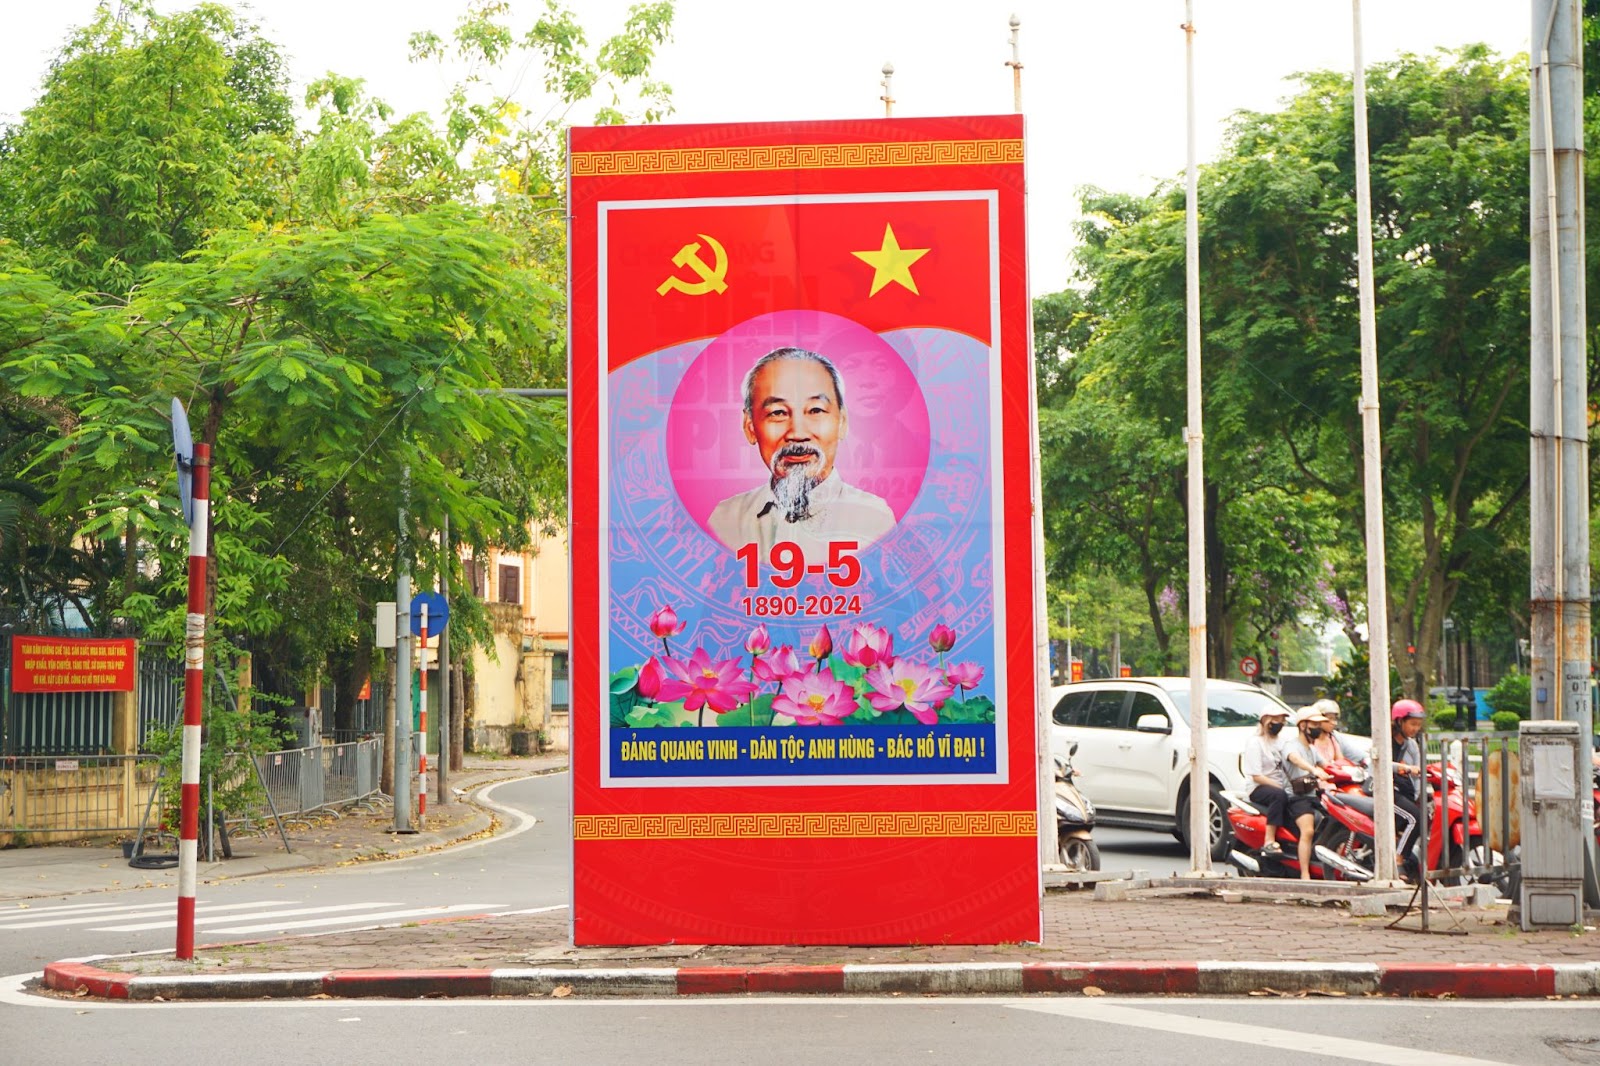 Chủ tịch Hồ Chí Minh vĩ đại sống mãi trong sự nghiệp của chúng ta